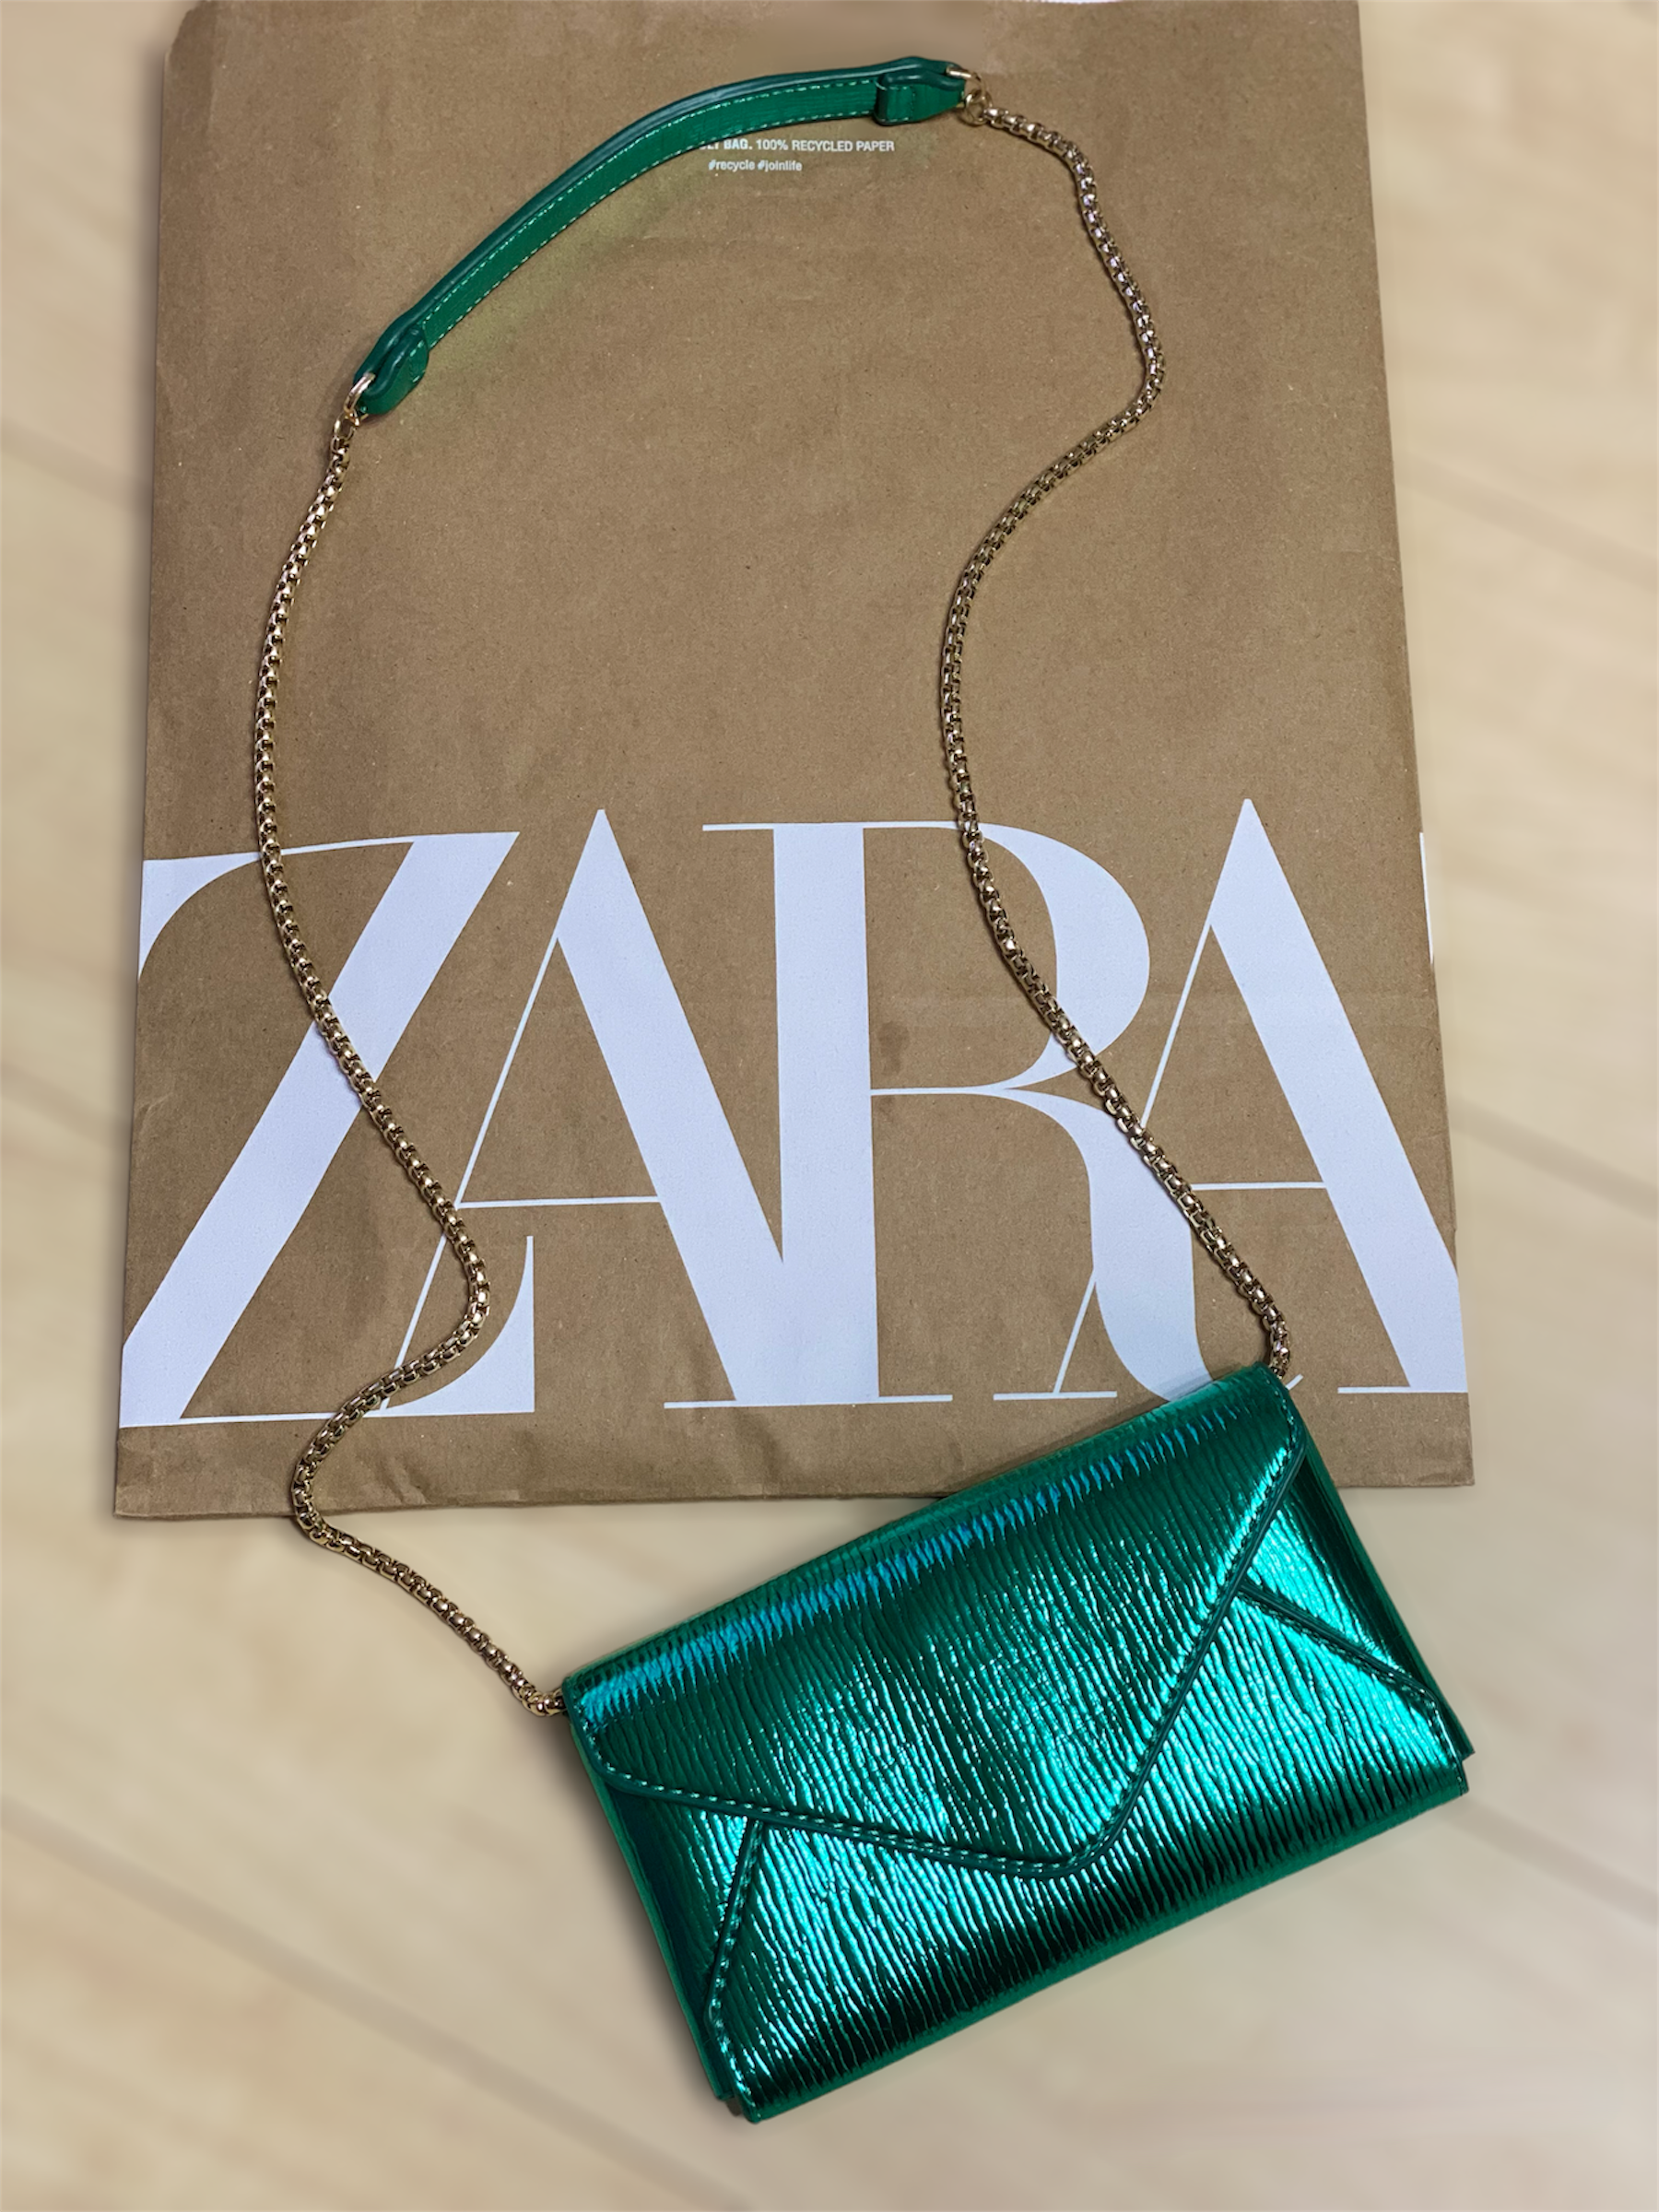 優秀すぎる！「財布としても使える」おすすめバッグ♡【ZARA】の”ショルダーバッグ”特集